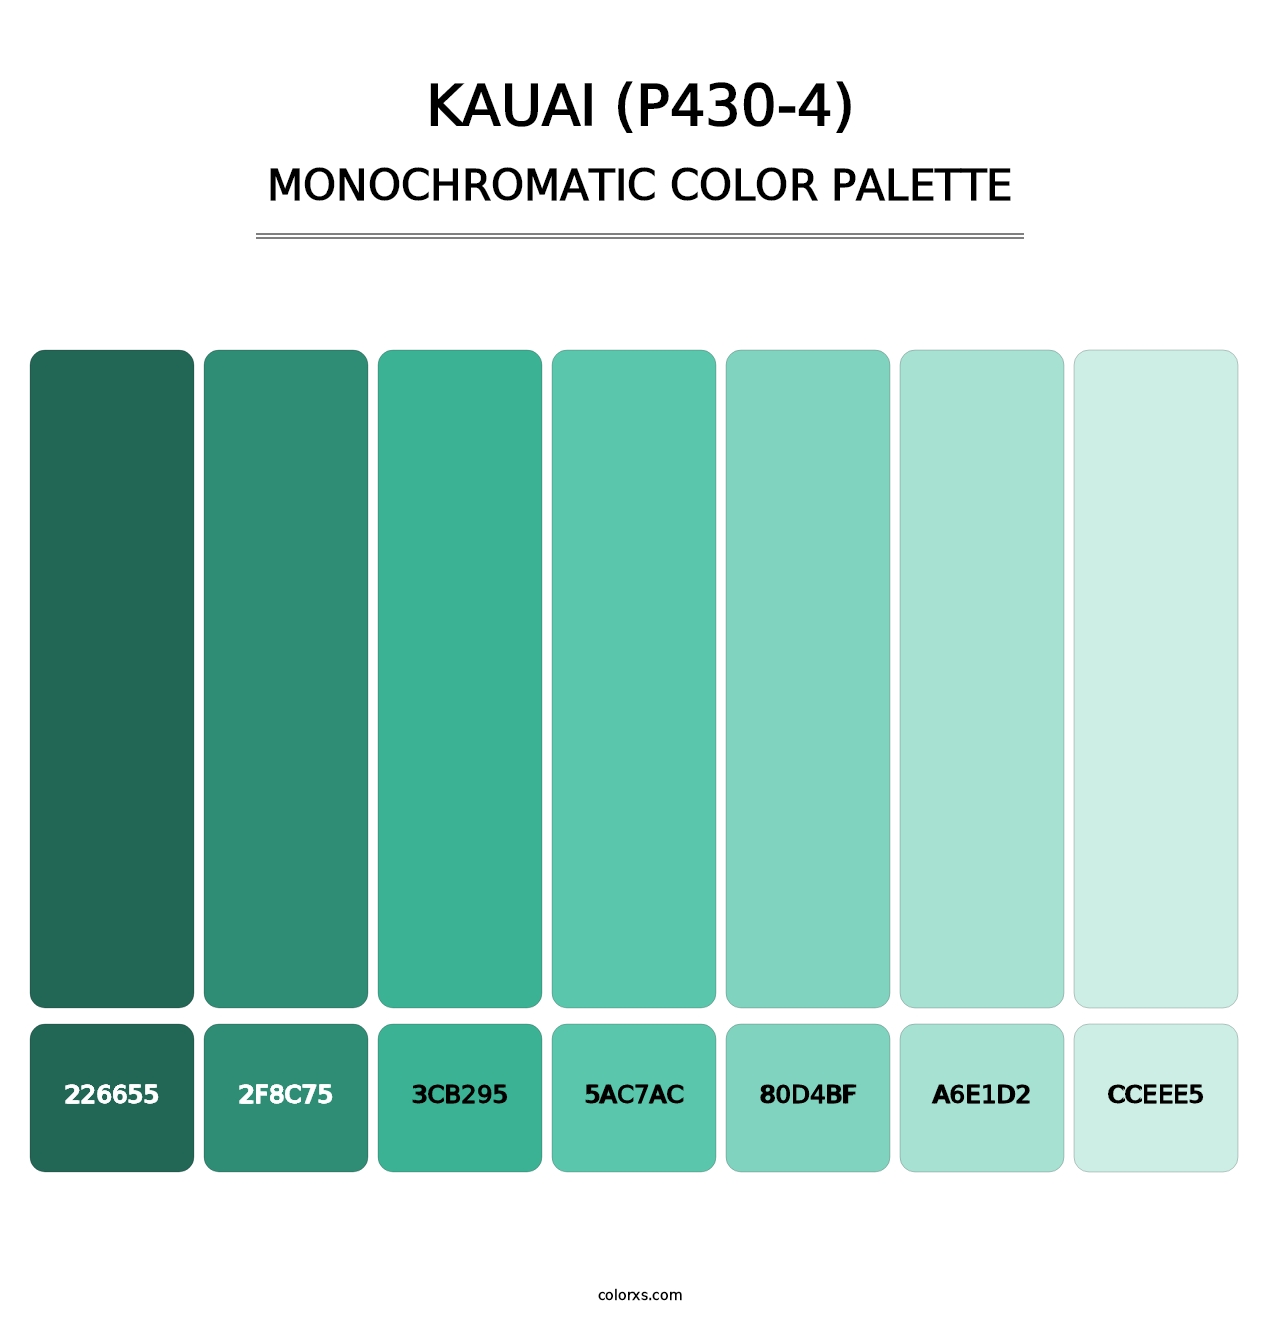 Kauai (P430-4) - Monochromatic Color Palette